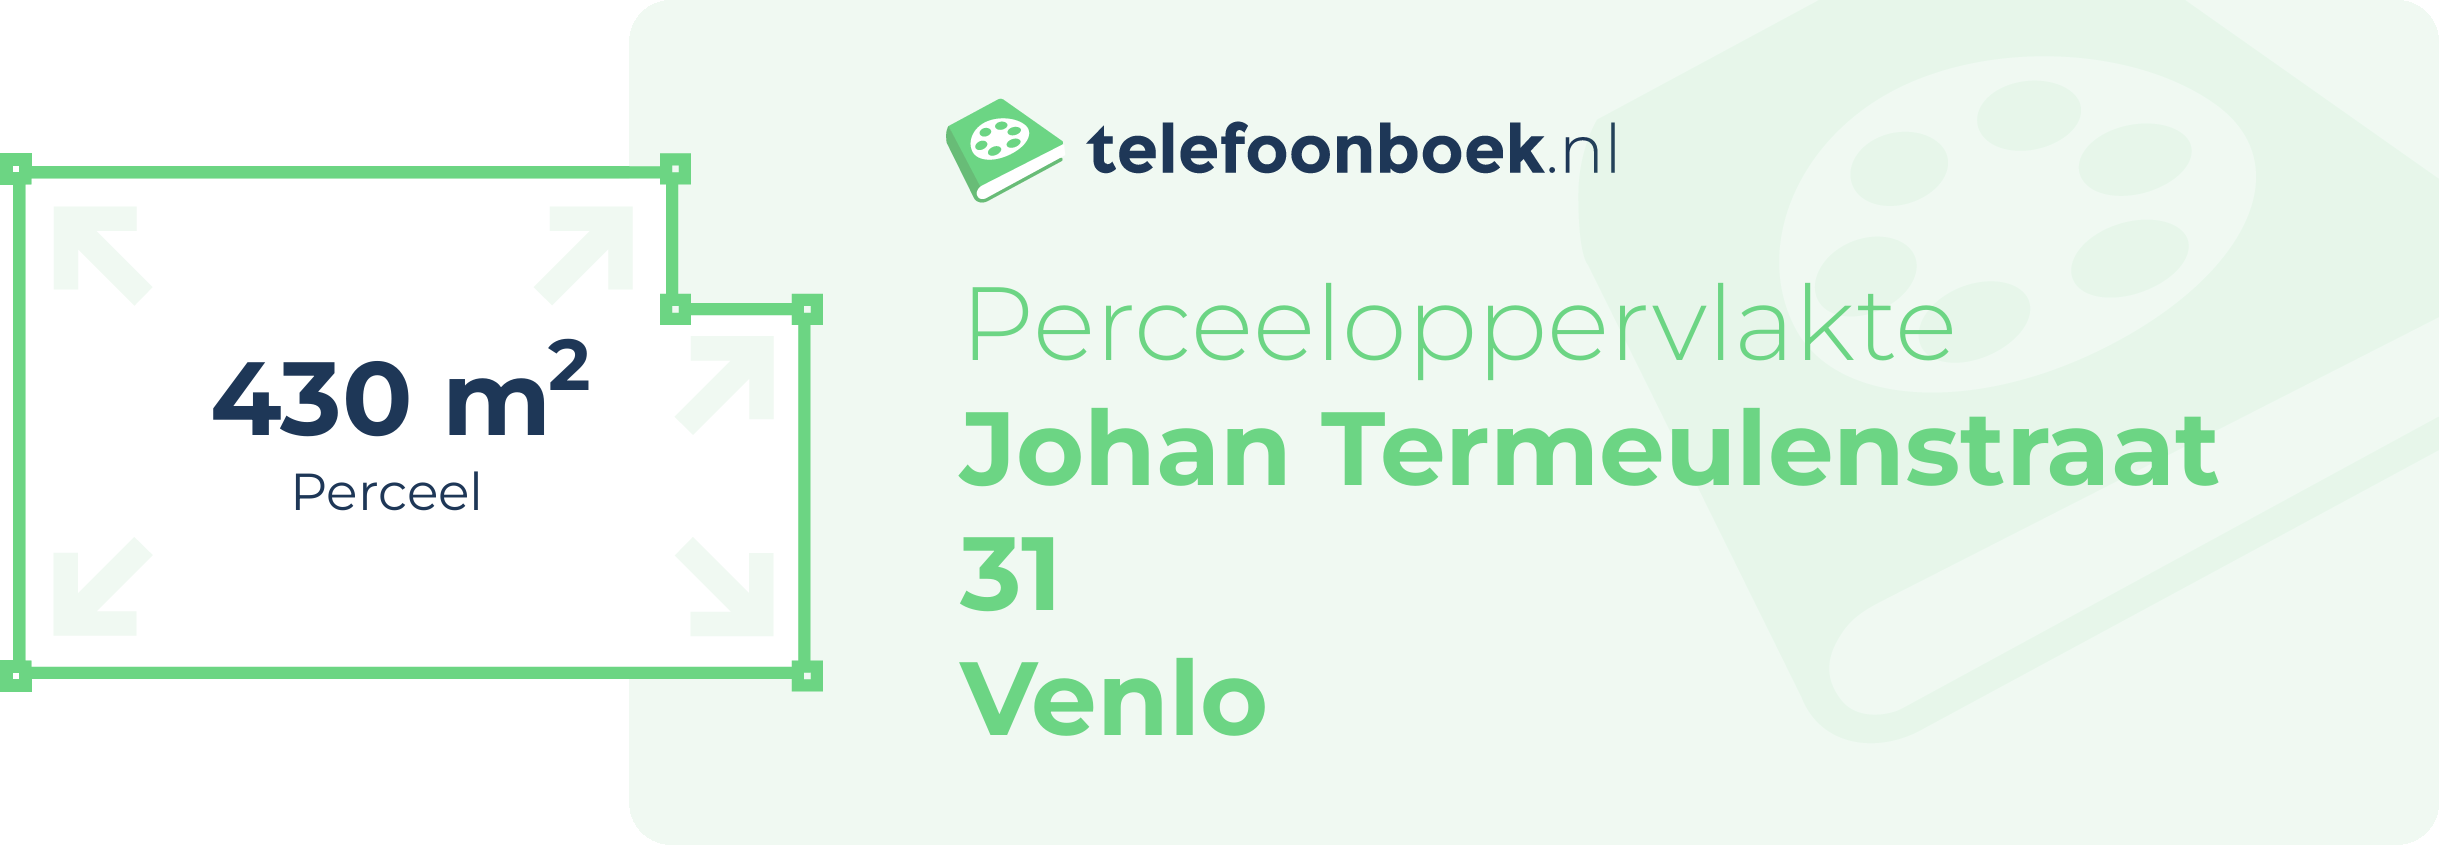 Perceeloppervlakte Johan Termeulenstraat 31 Venlo